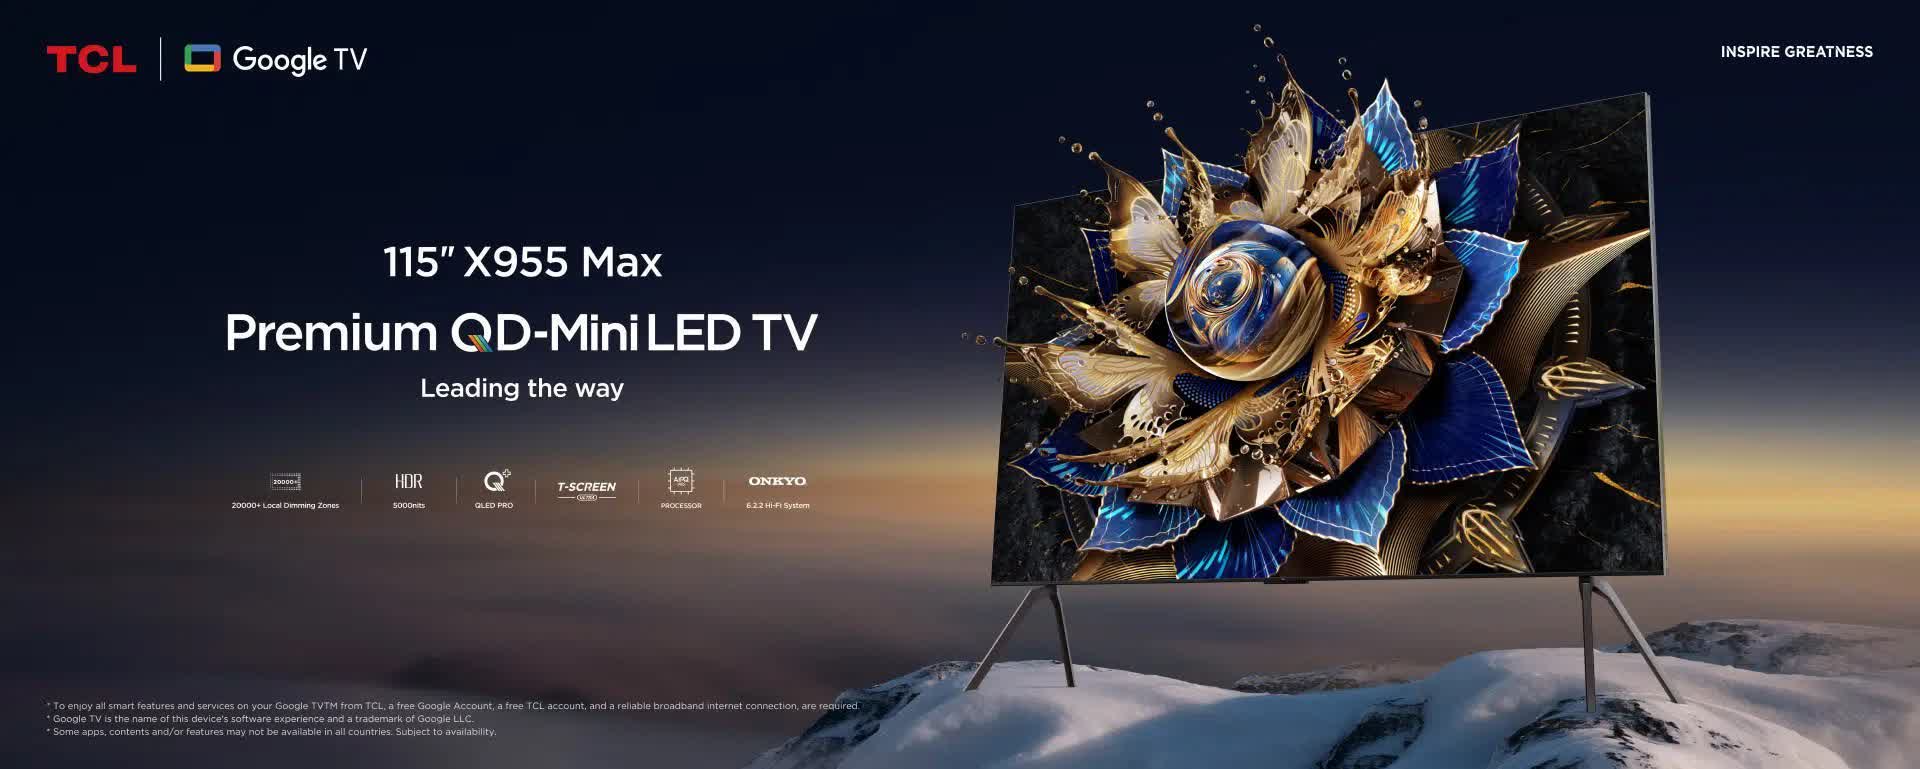 TCL lanzará pronto una versión de 115 pulgadas de su televisor insignia 4K QD-Mini-LED